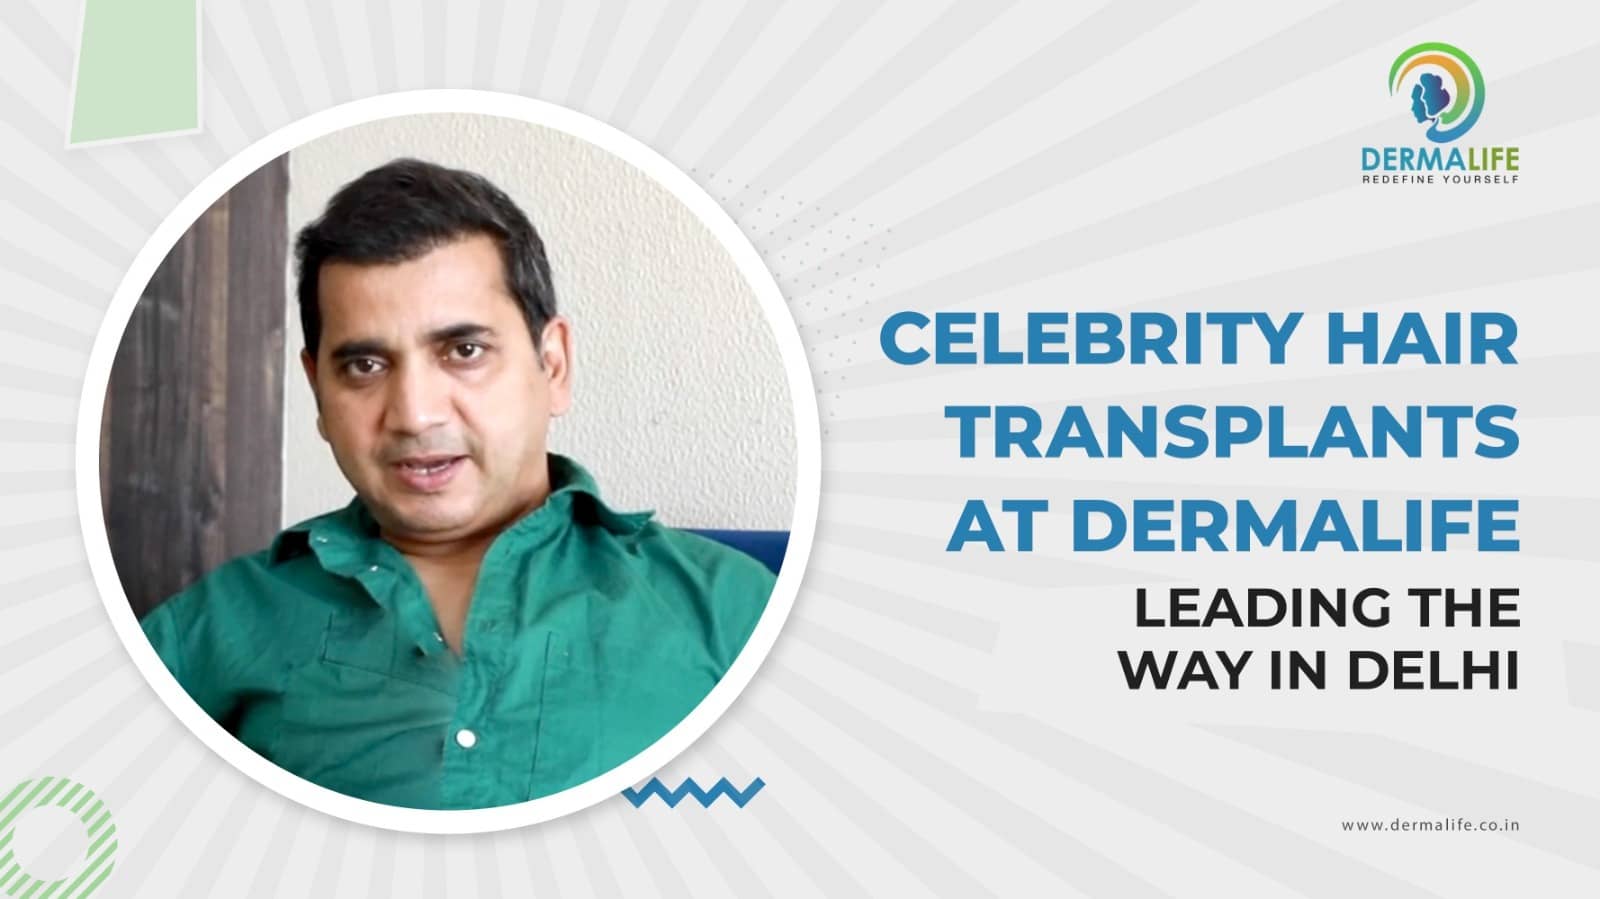 Saanand Verma Celebrity Hair Transplants Dermalife Leading the Way Delhi